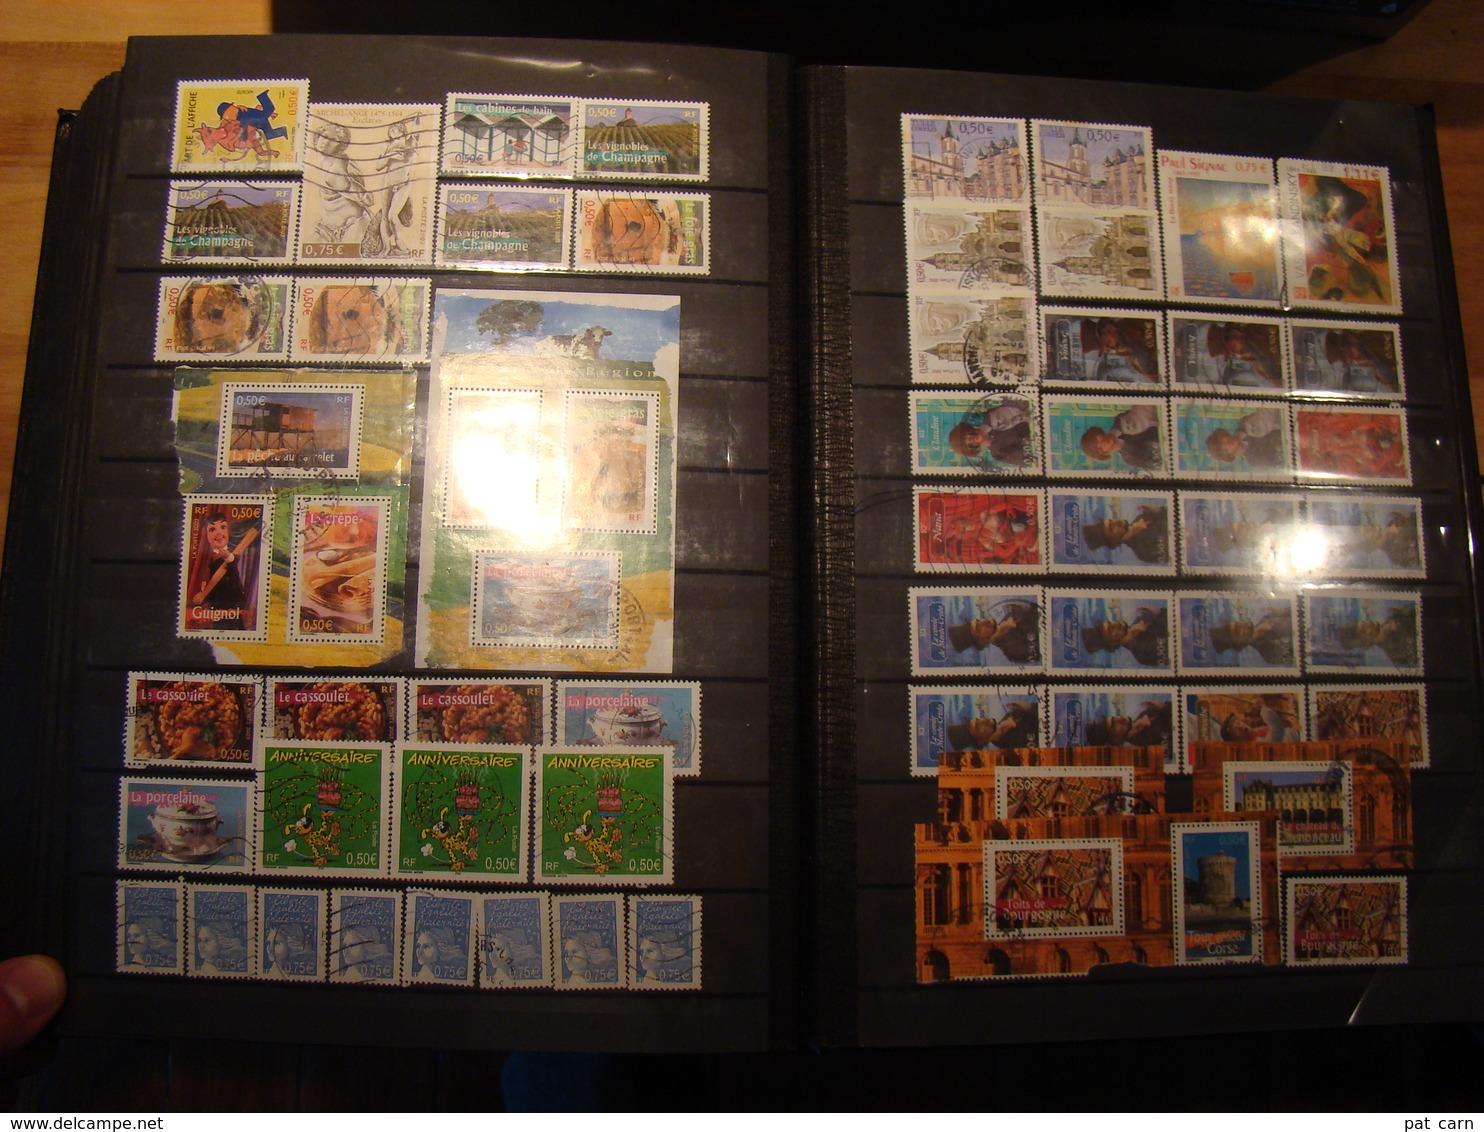 En classeur de 64 pages, stock de près de 2200 timbres de France, à voir